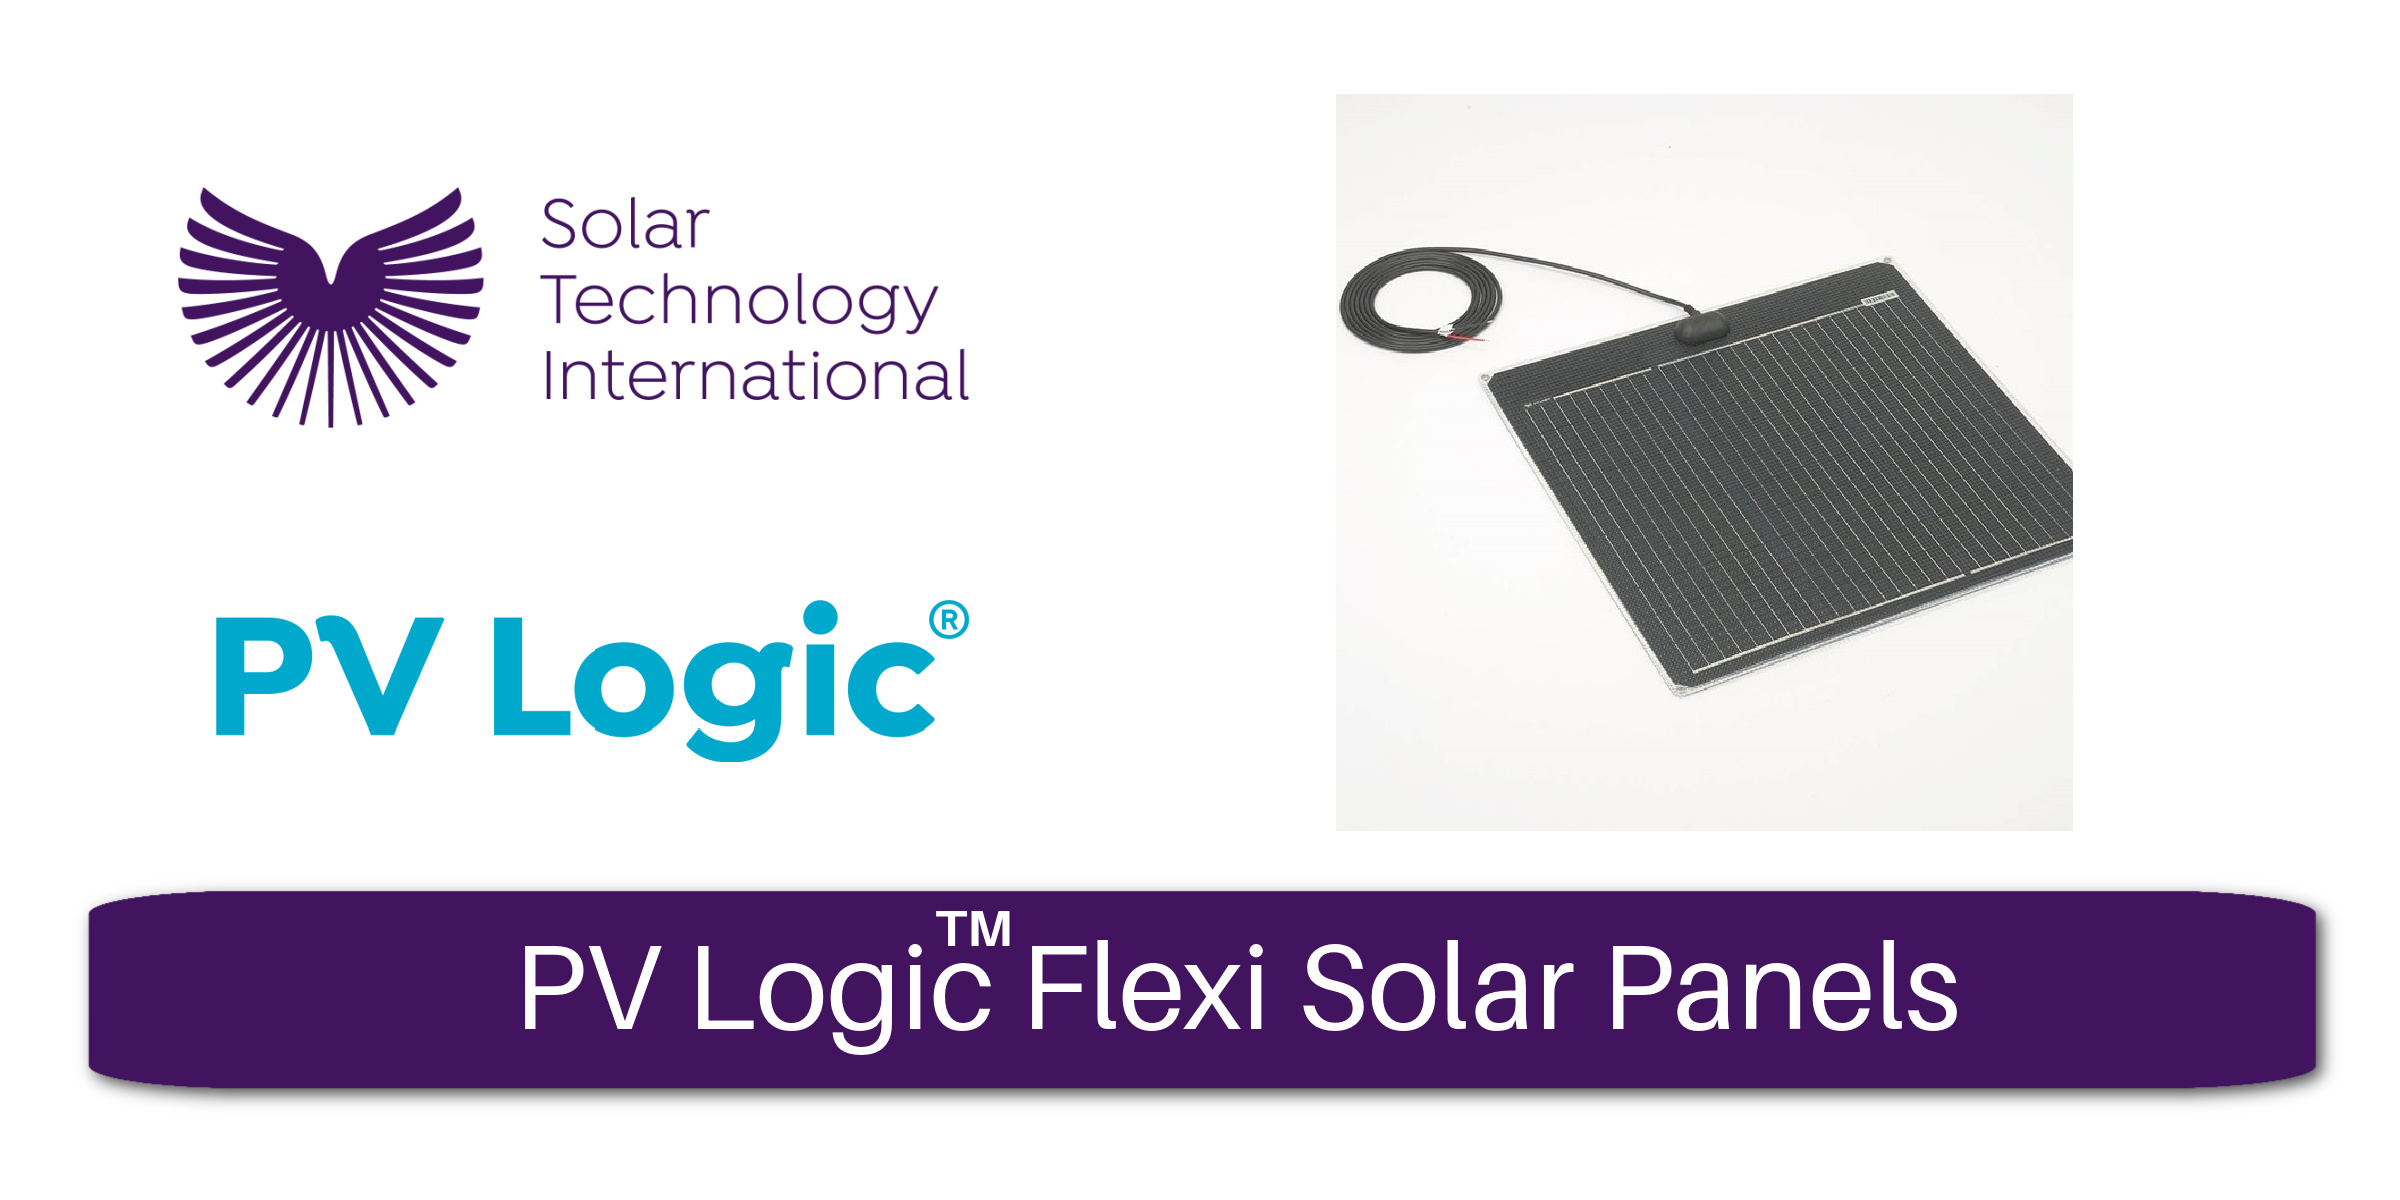 PV Logic Flexi Solar Panels